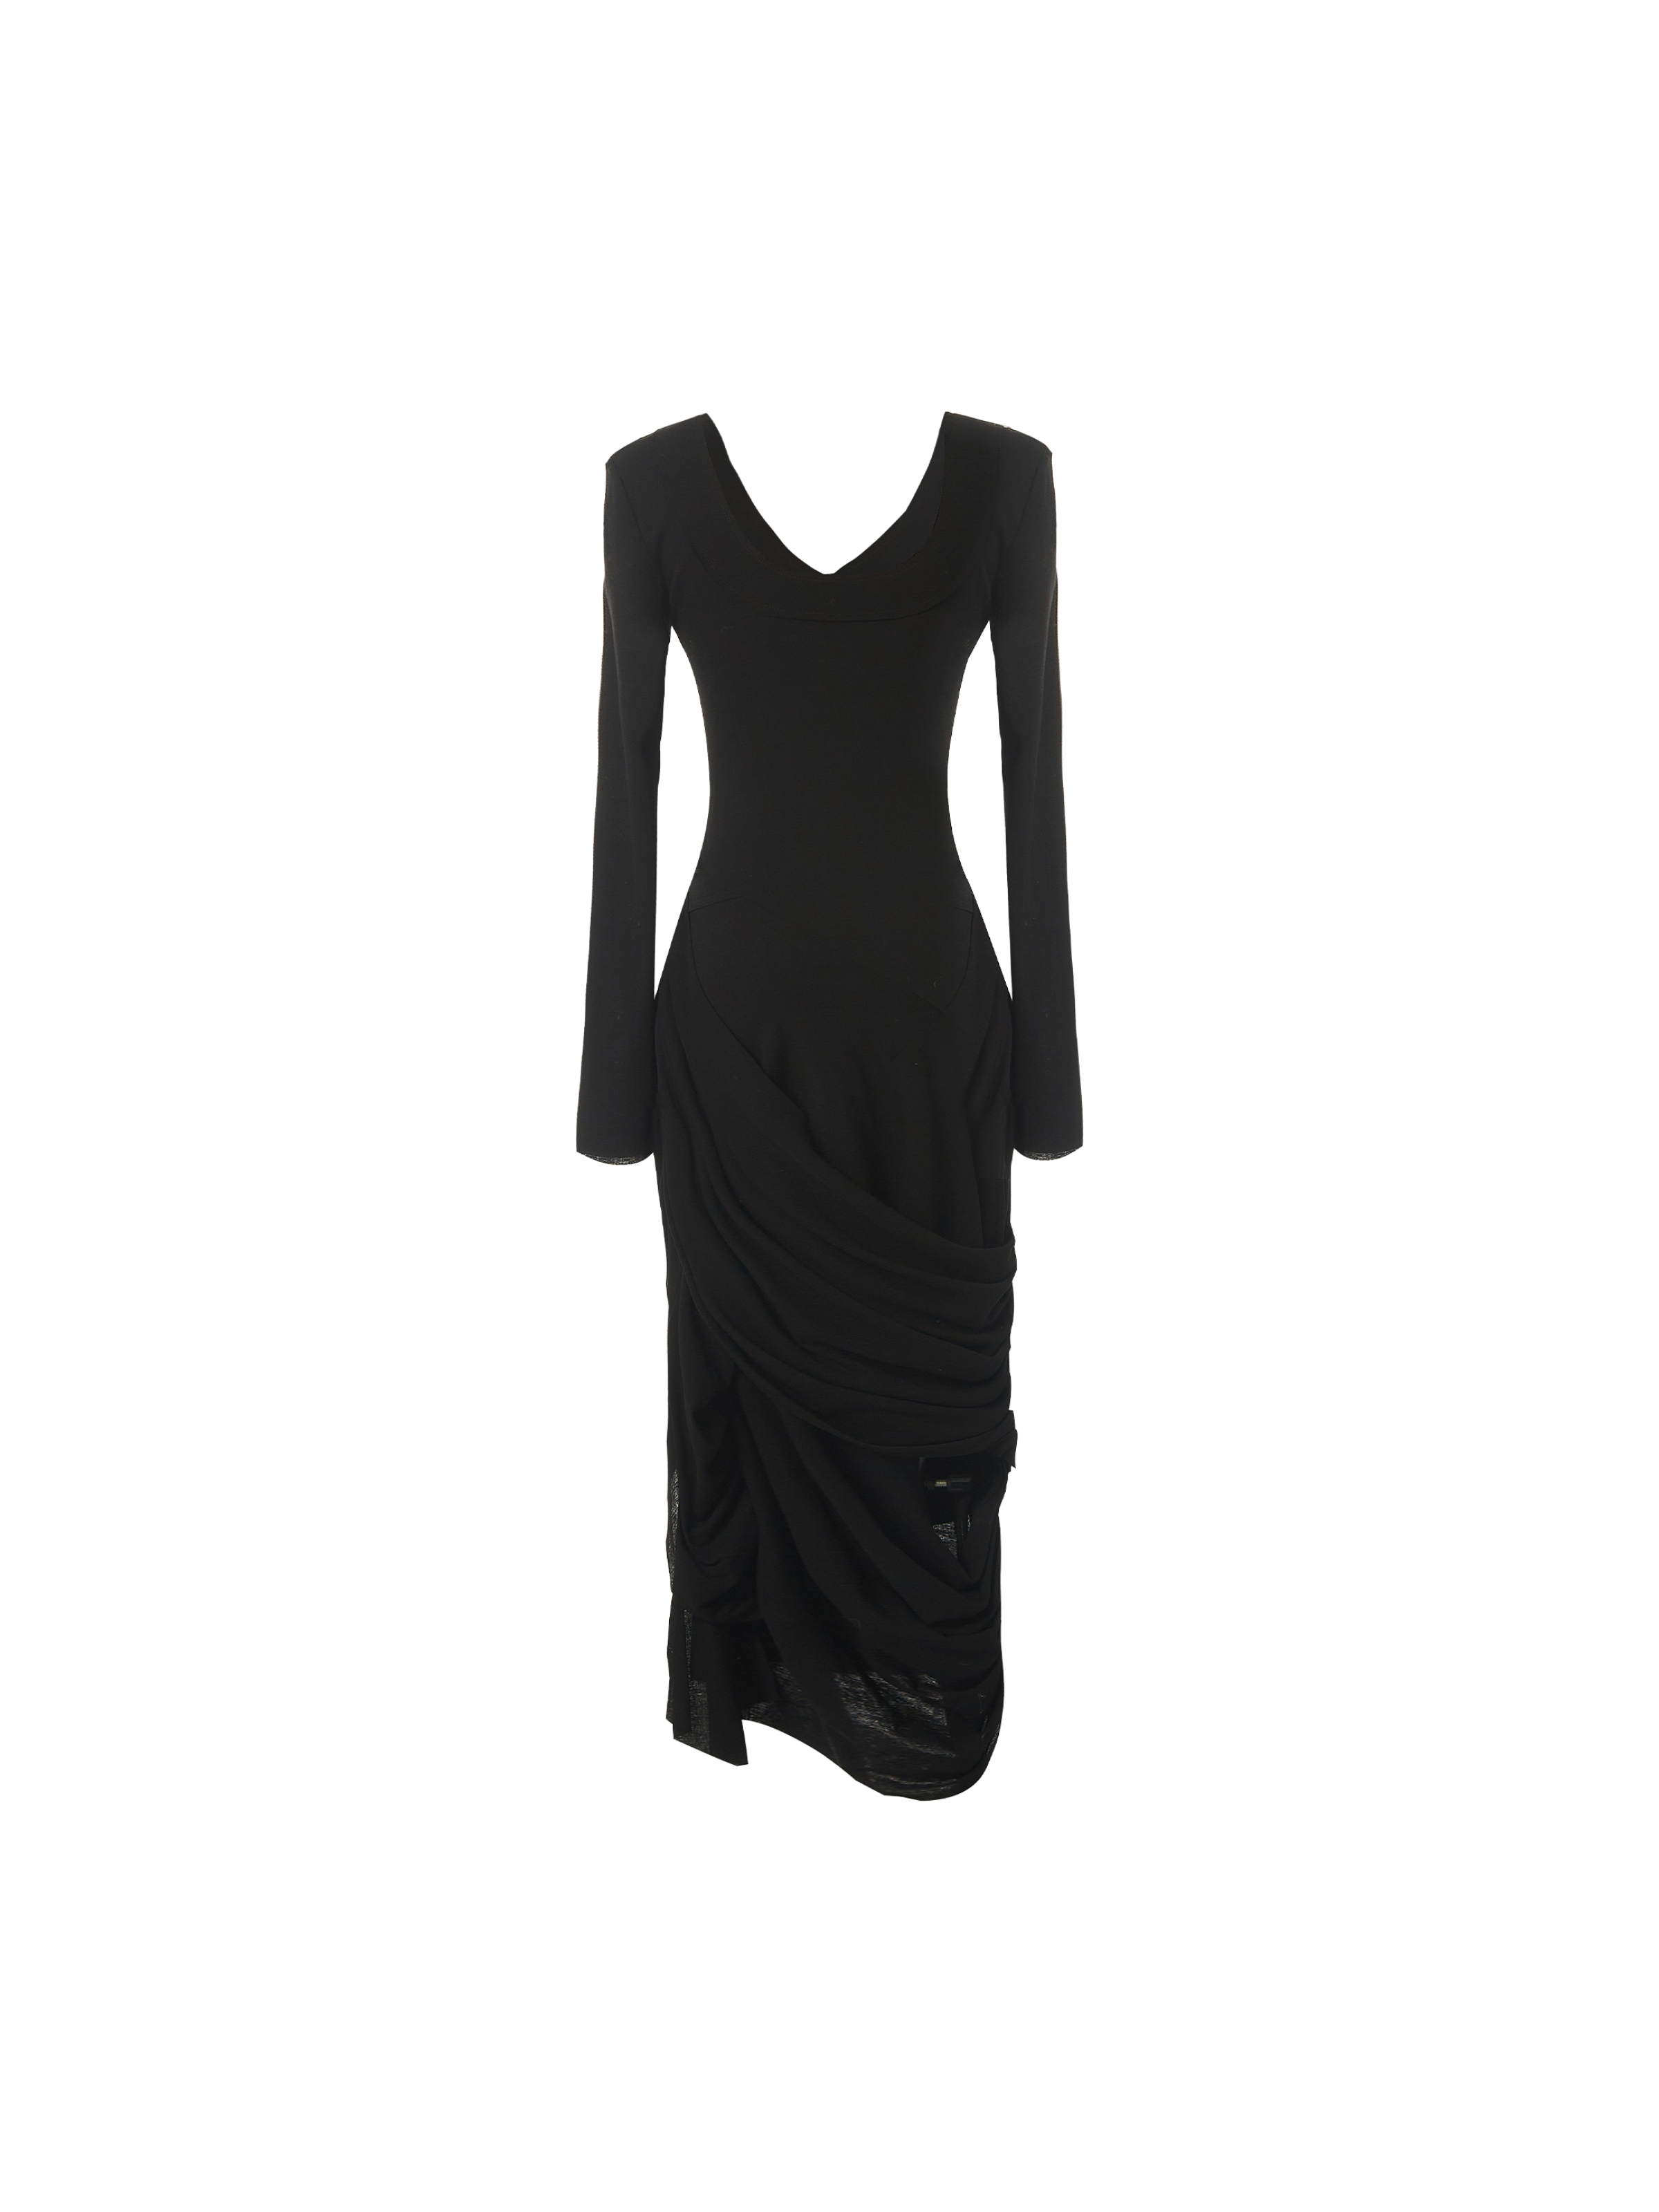 블랙 브이넥 타이트 드레스